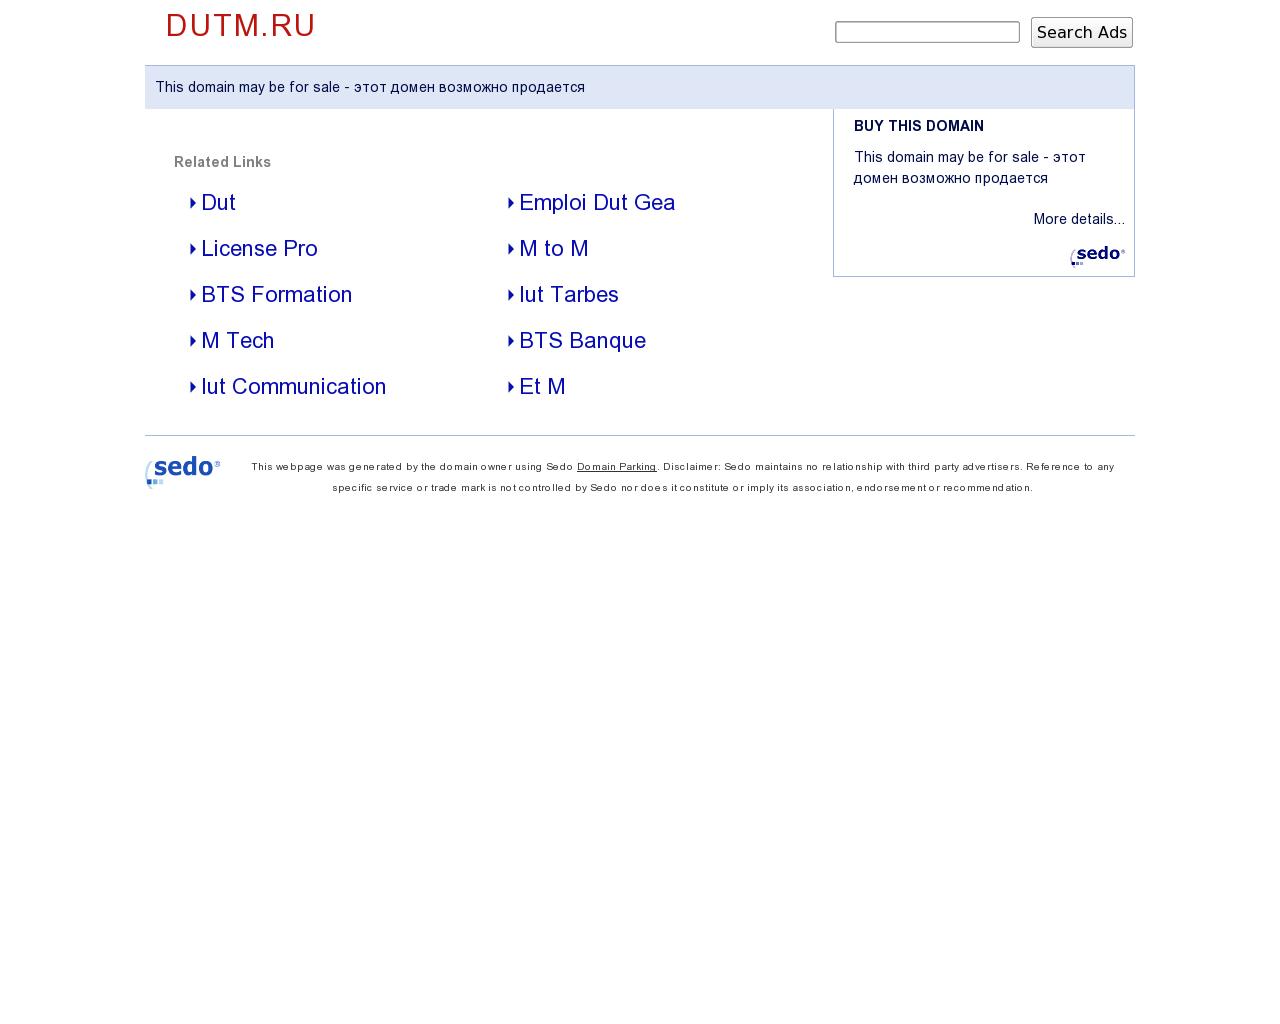 Изображение сайта dutm.ru в разрешении 1280x1024